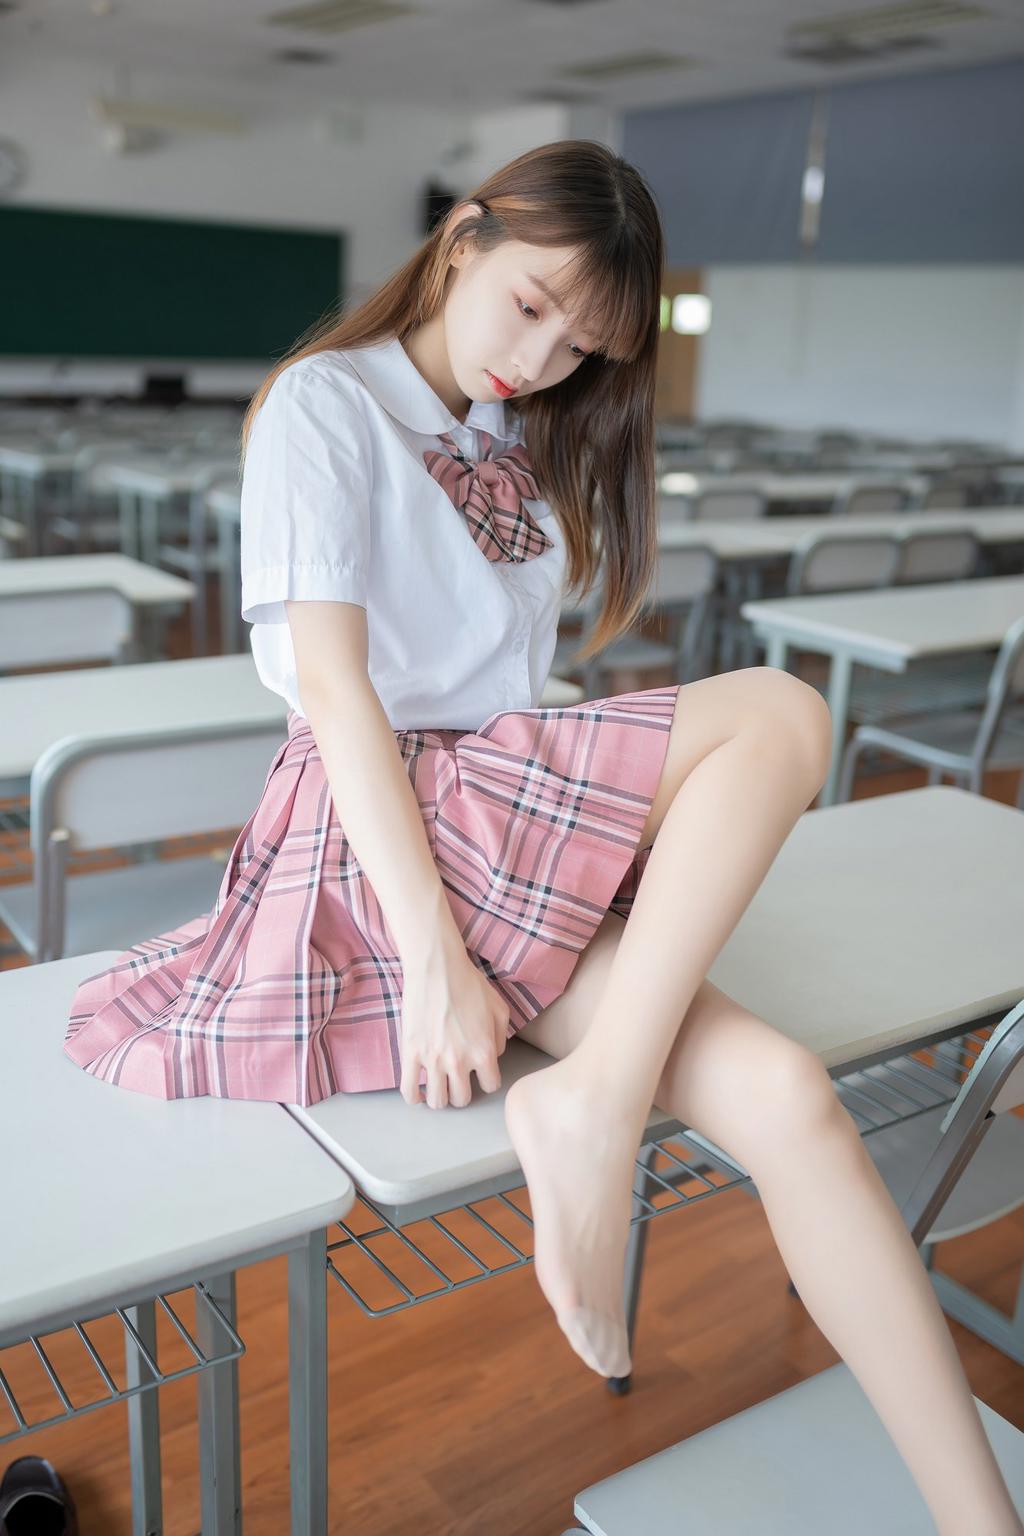 教室粉色格裙肉丝少女